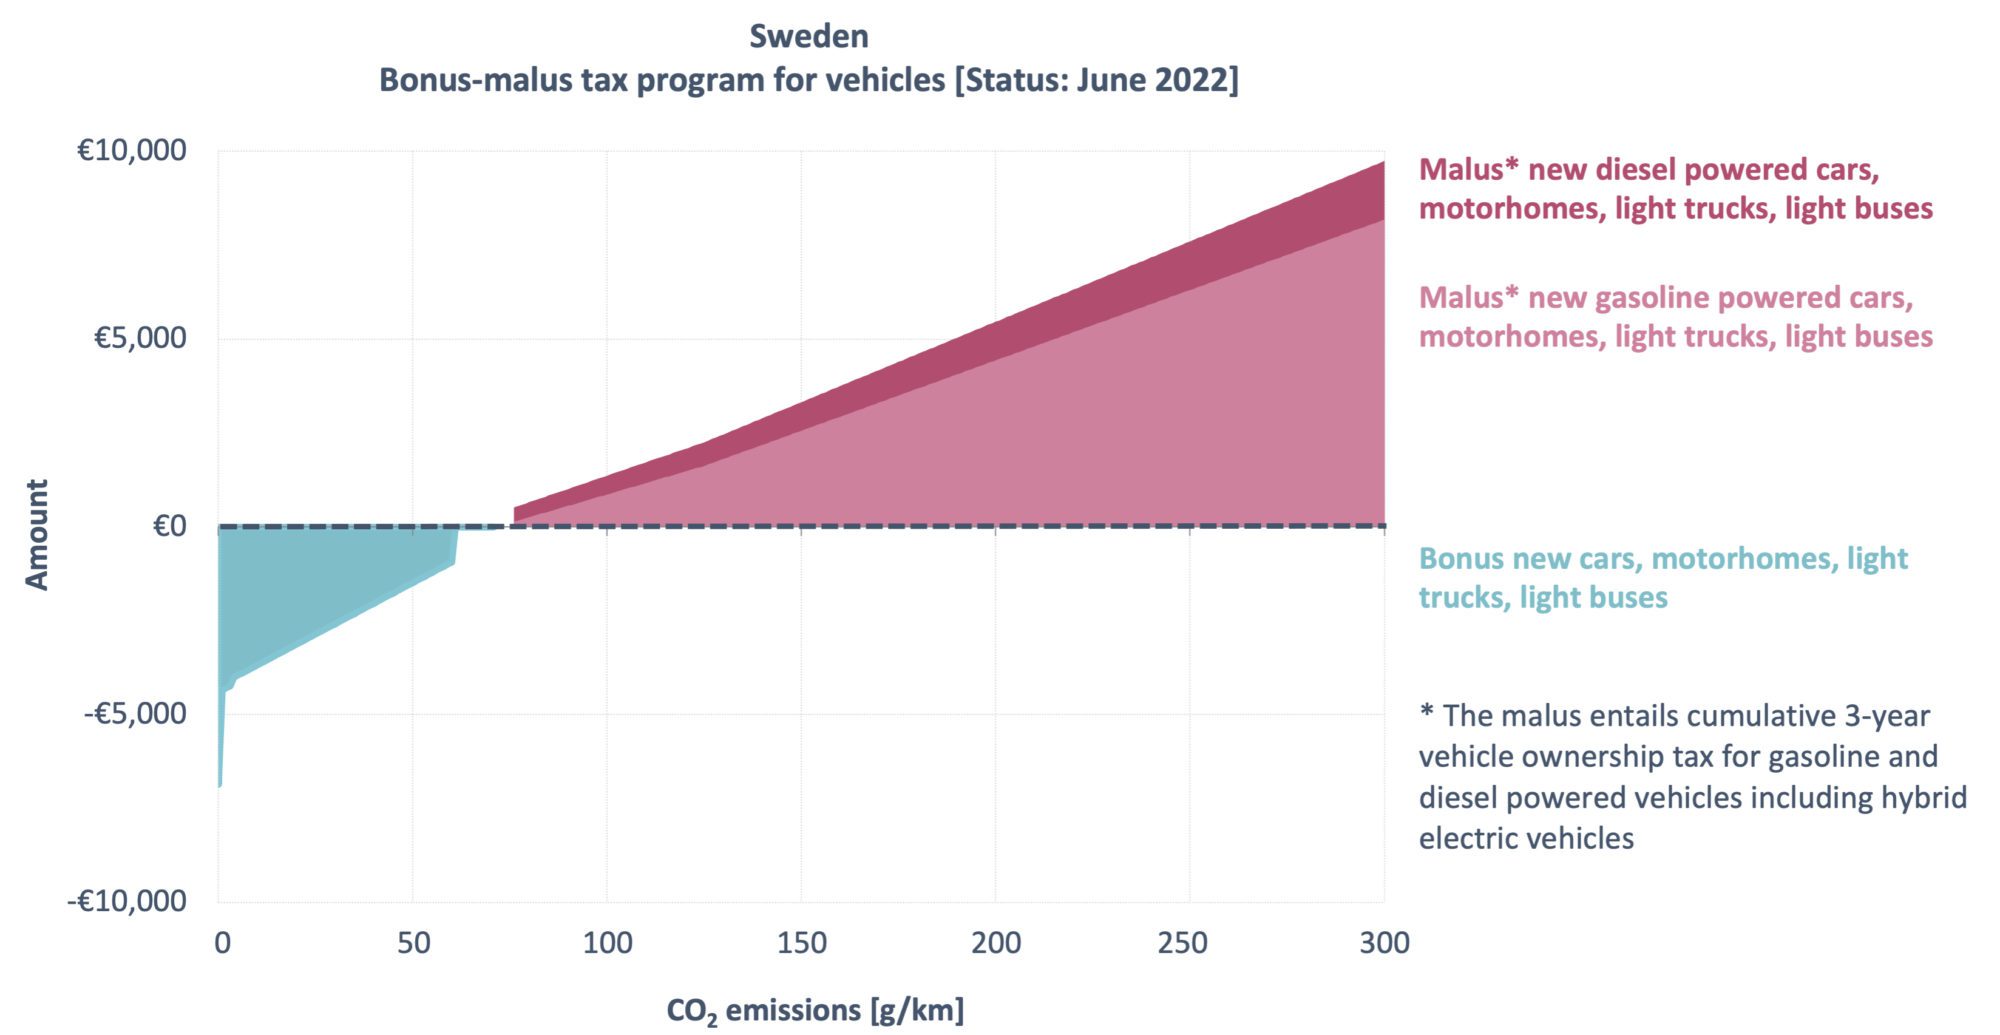 Kaavio, joka näyttää bonus-malus-ohjelman Ruotsissa